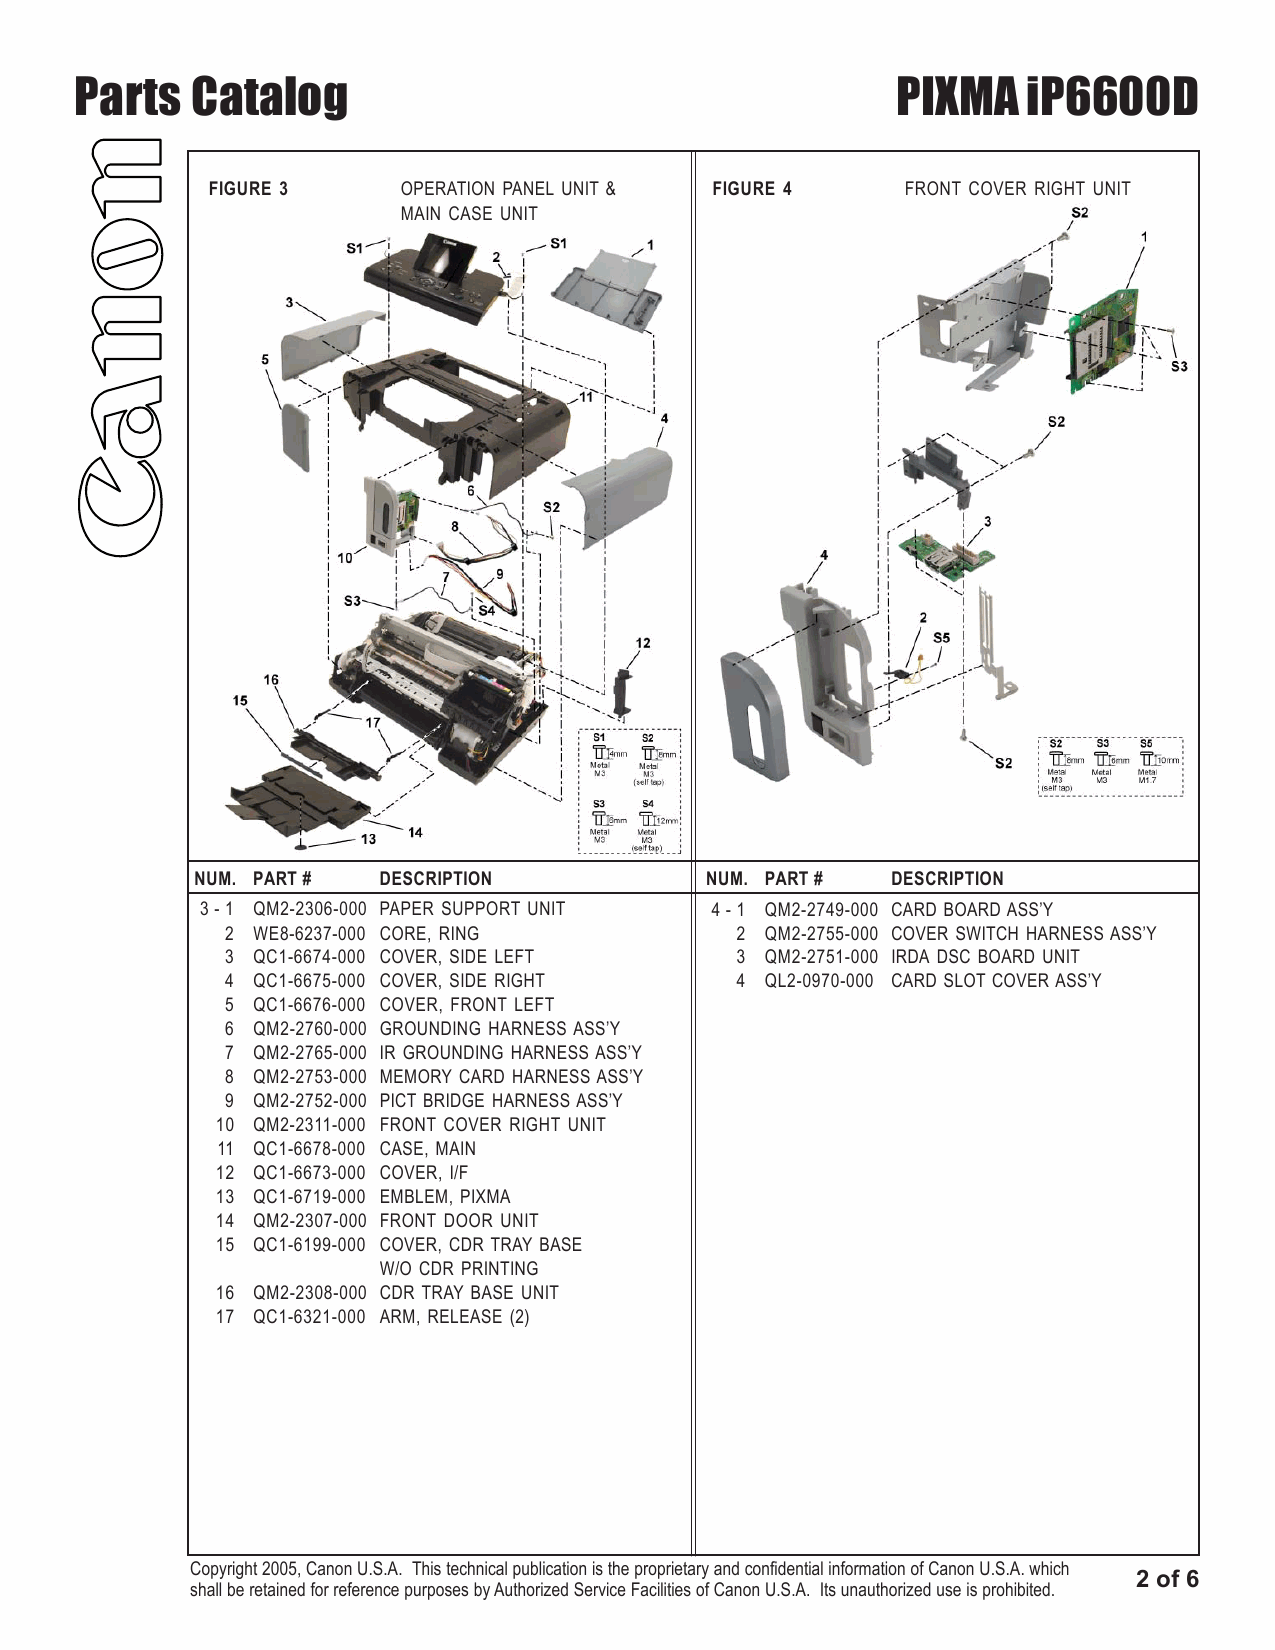 Canon PIXMA iP6600D Parts Catalog-3